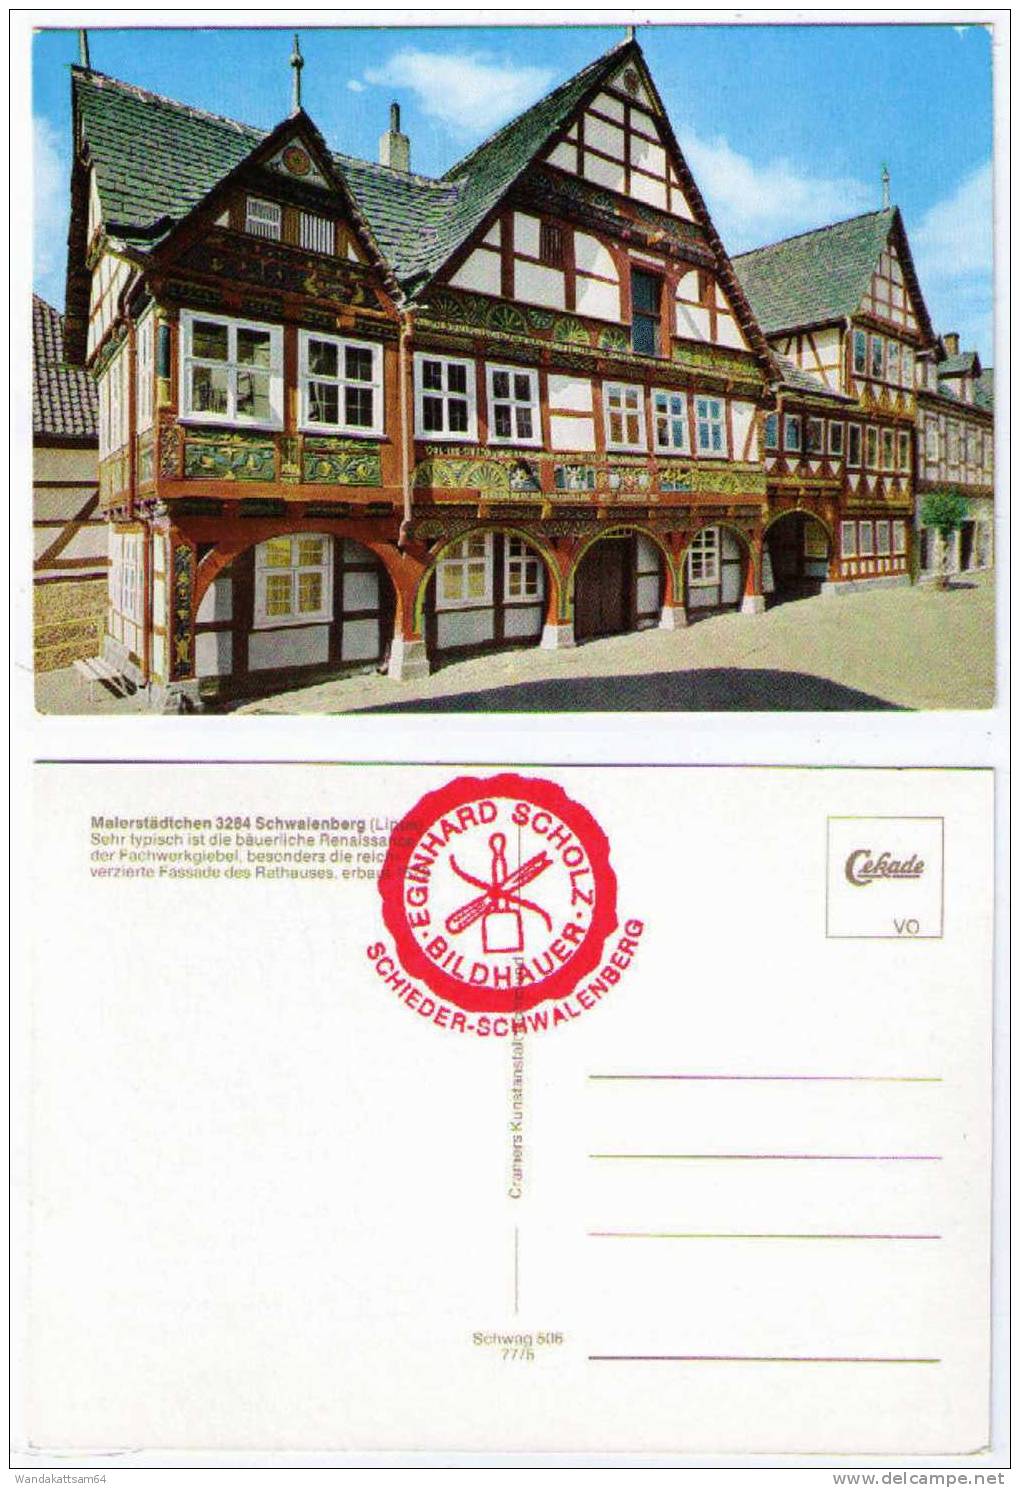 AK Malerstädtchen 3284 Schwalenberg (Lippe) Fachwerkgiebel Bäuerliche Renaissance Des Rathaus Erbaut 1579 - Detmold